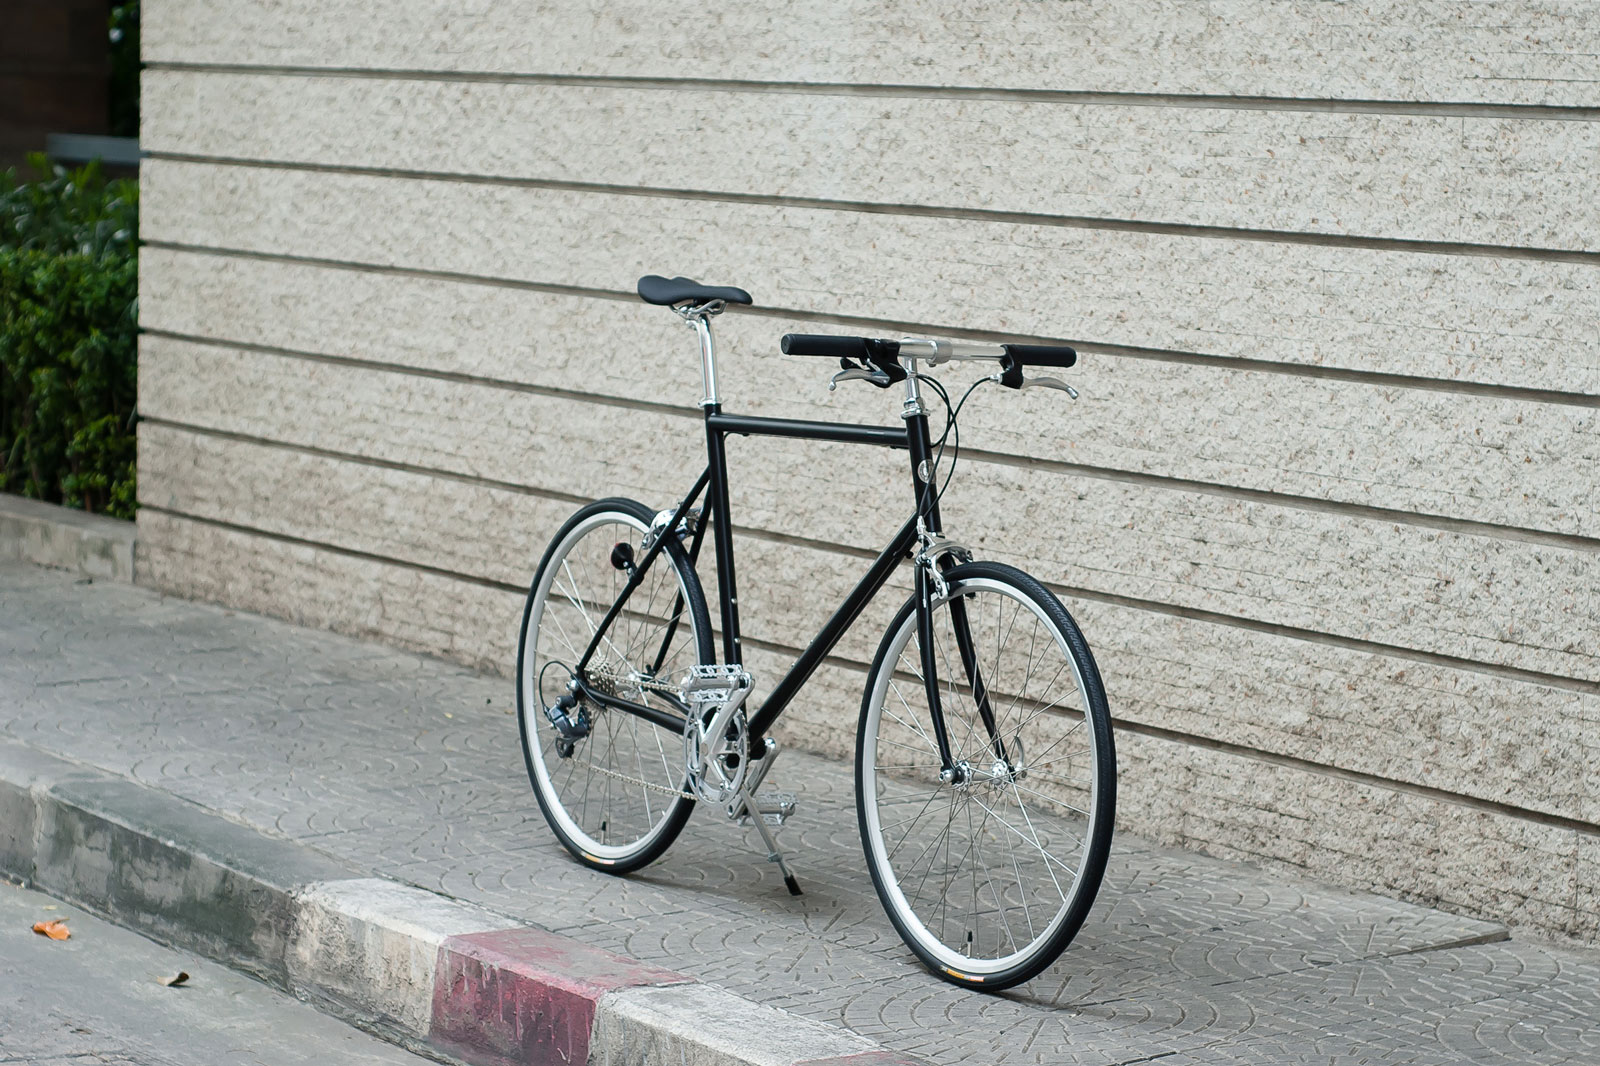 รถจักรยานรุ่น tokyobike cs sport matt black สีพิเศษ สีดำด้าน